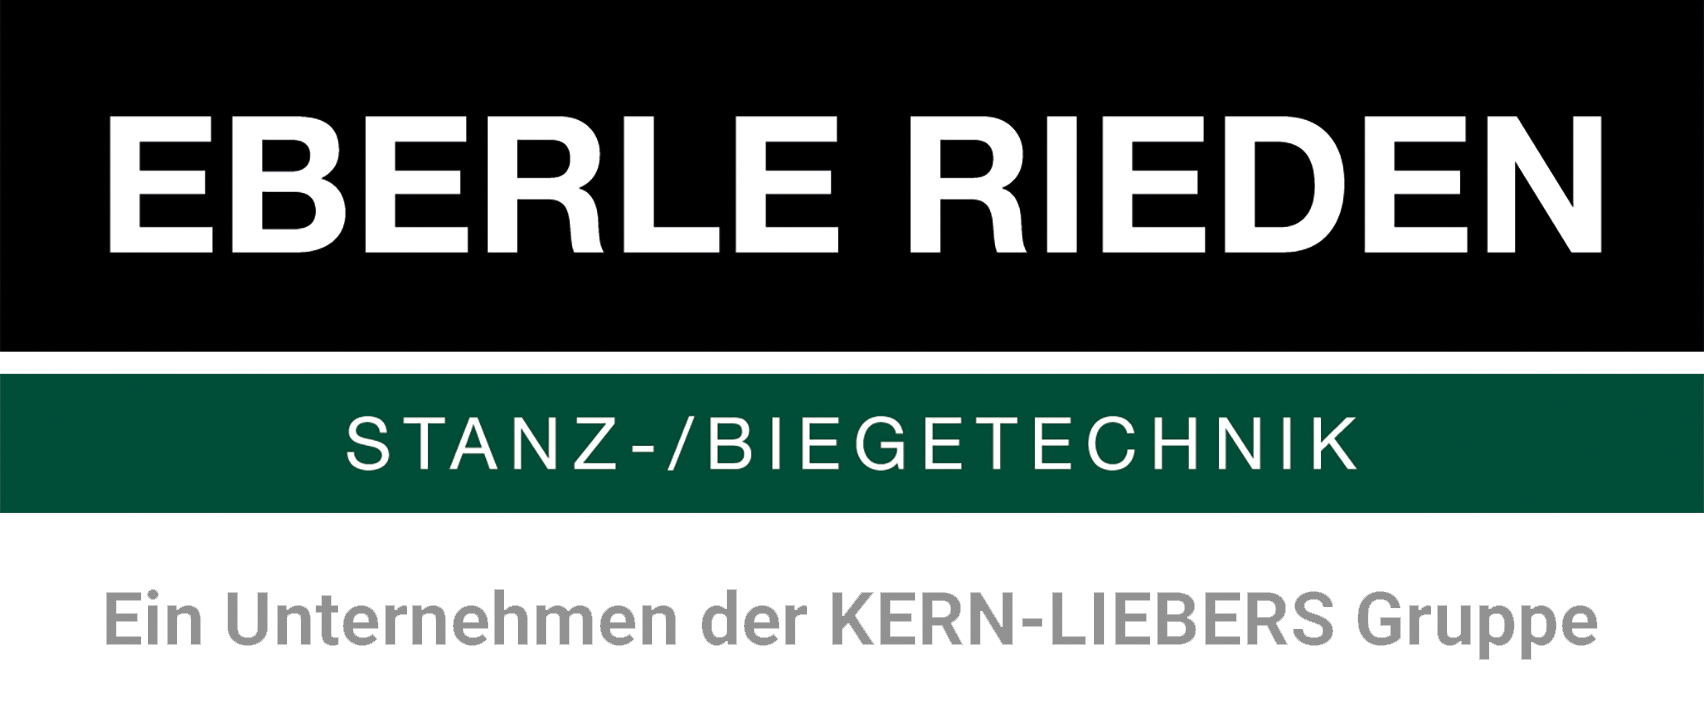 EBERLE RIEDEN GmbH